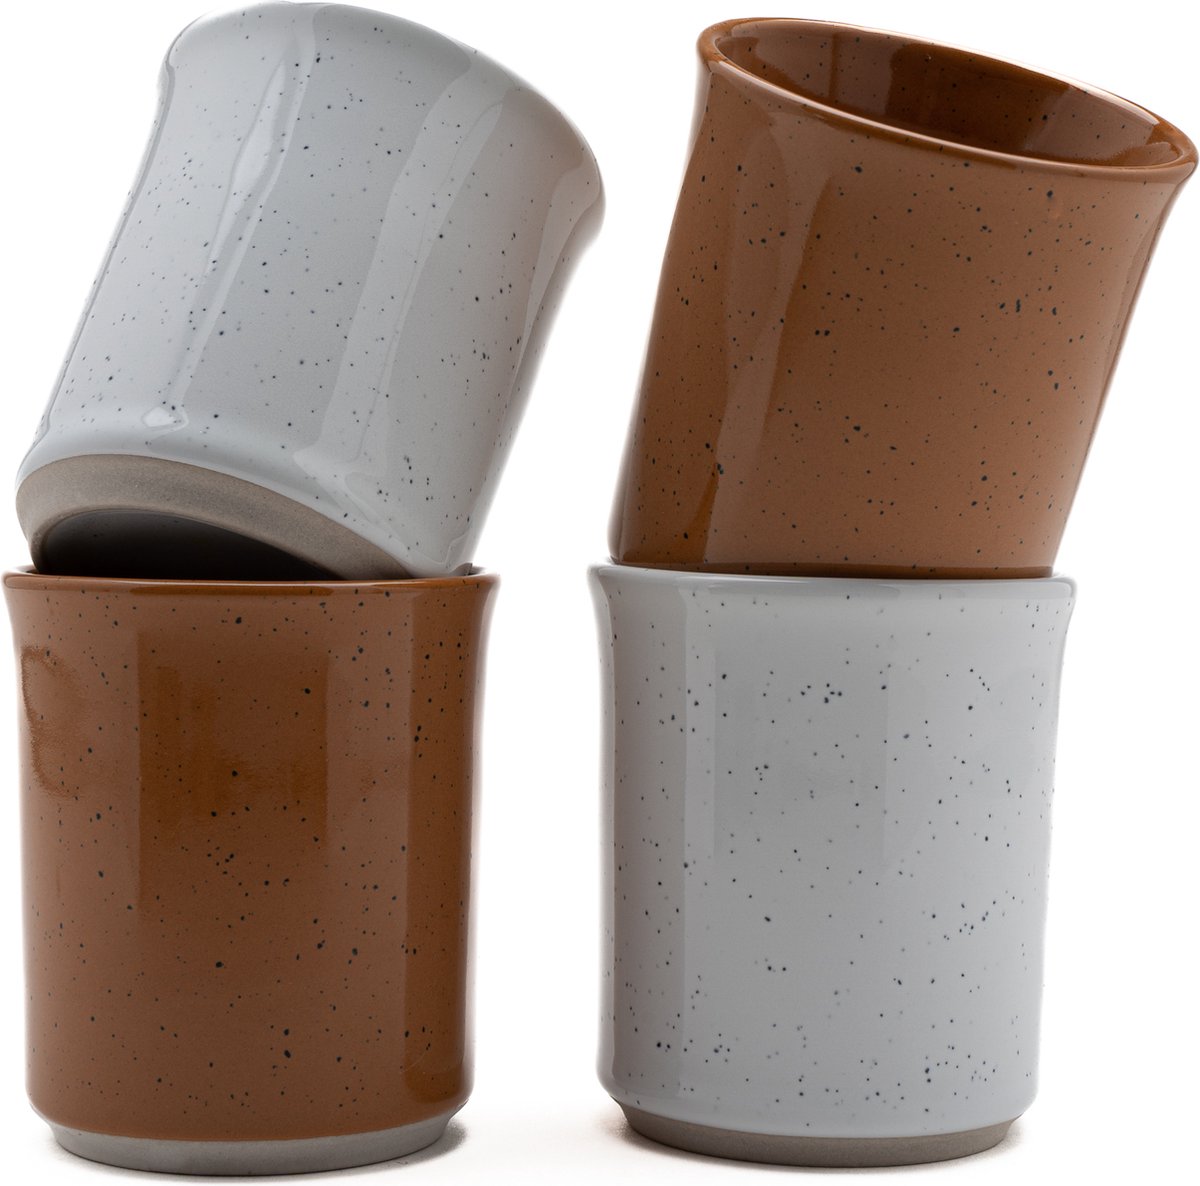 Koffiekopjes - koffiemok - koffiebeker - set van 4 kopjes - 150ML - keramiek - hip en trendy - kado voor hem & haar - wit - bruin/congac